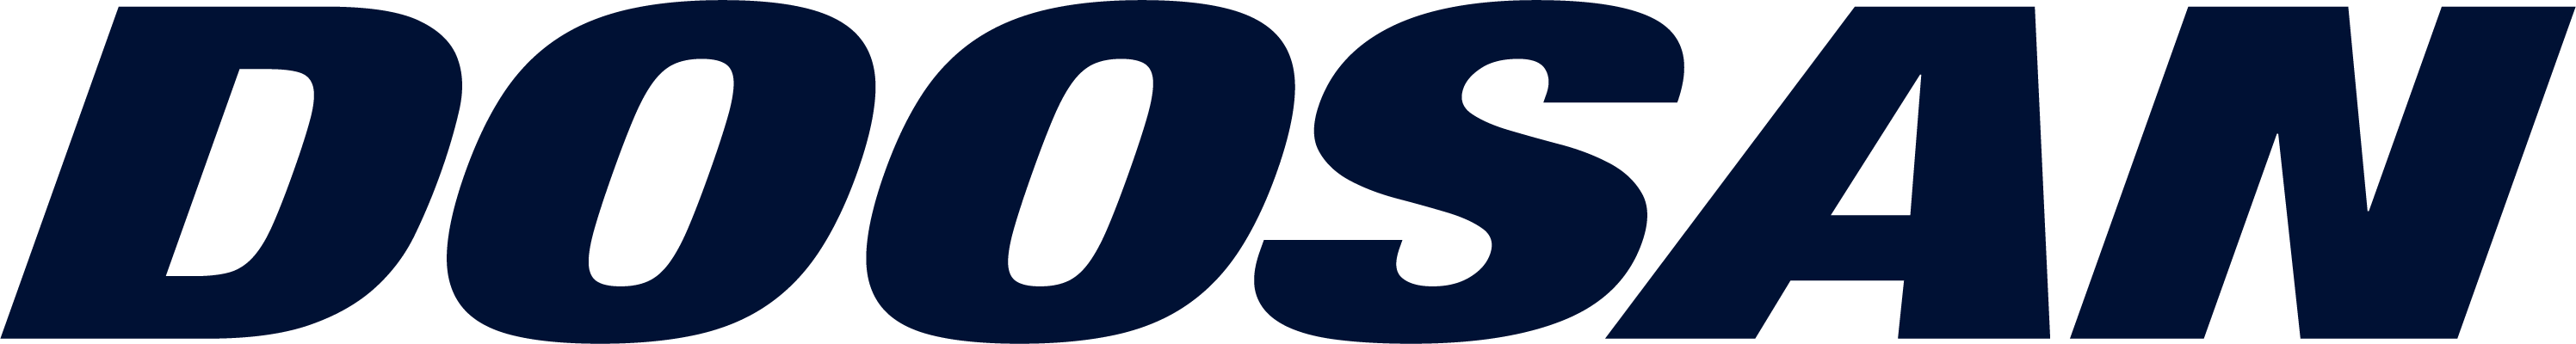 2018_doosan-logo_DMTnavy-01.png